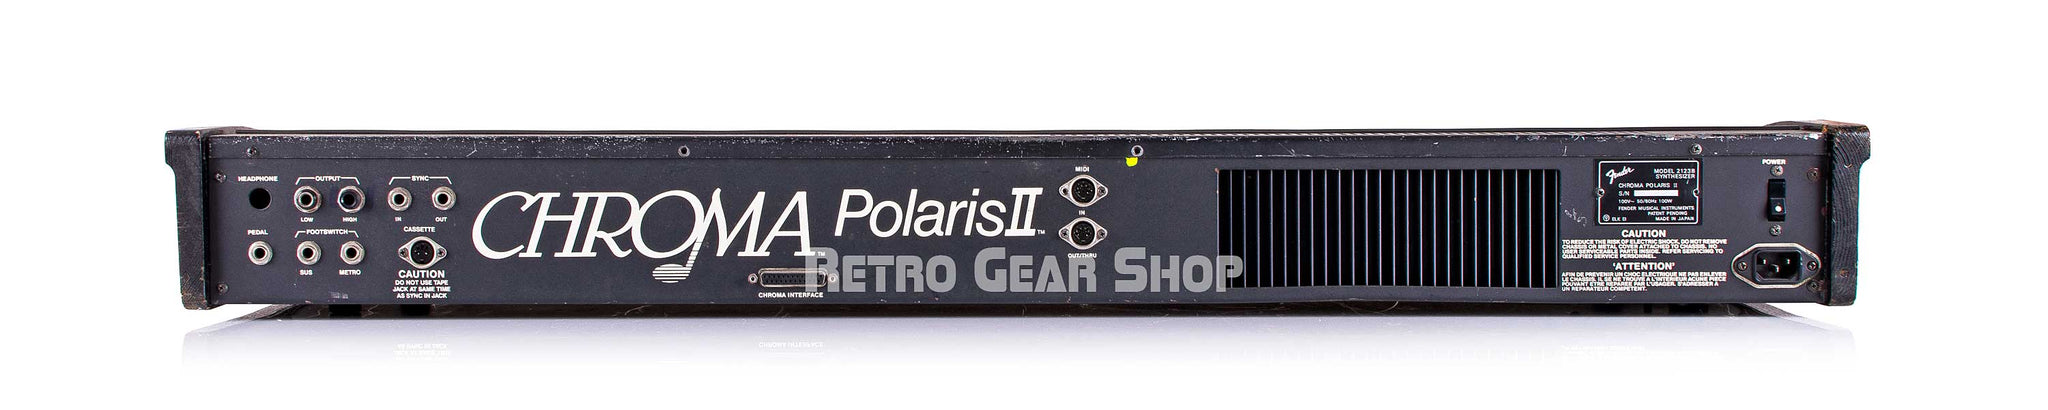 Fender Chroma Polaris II Rear